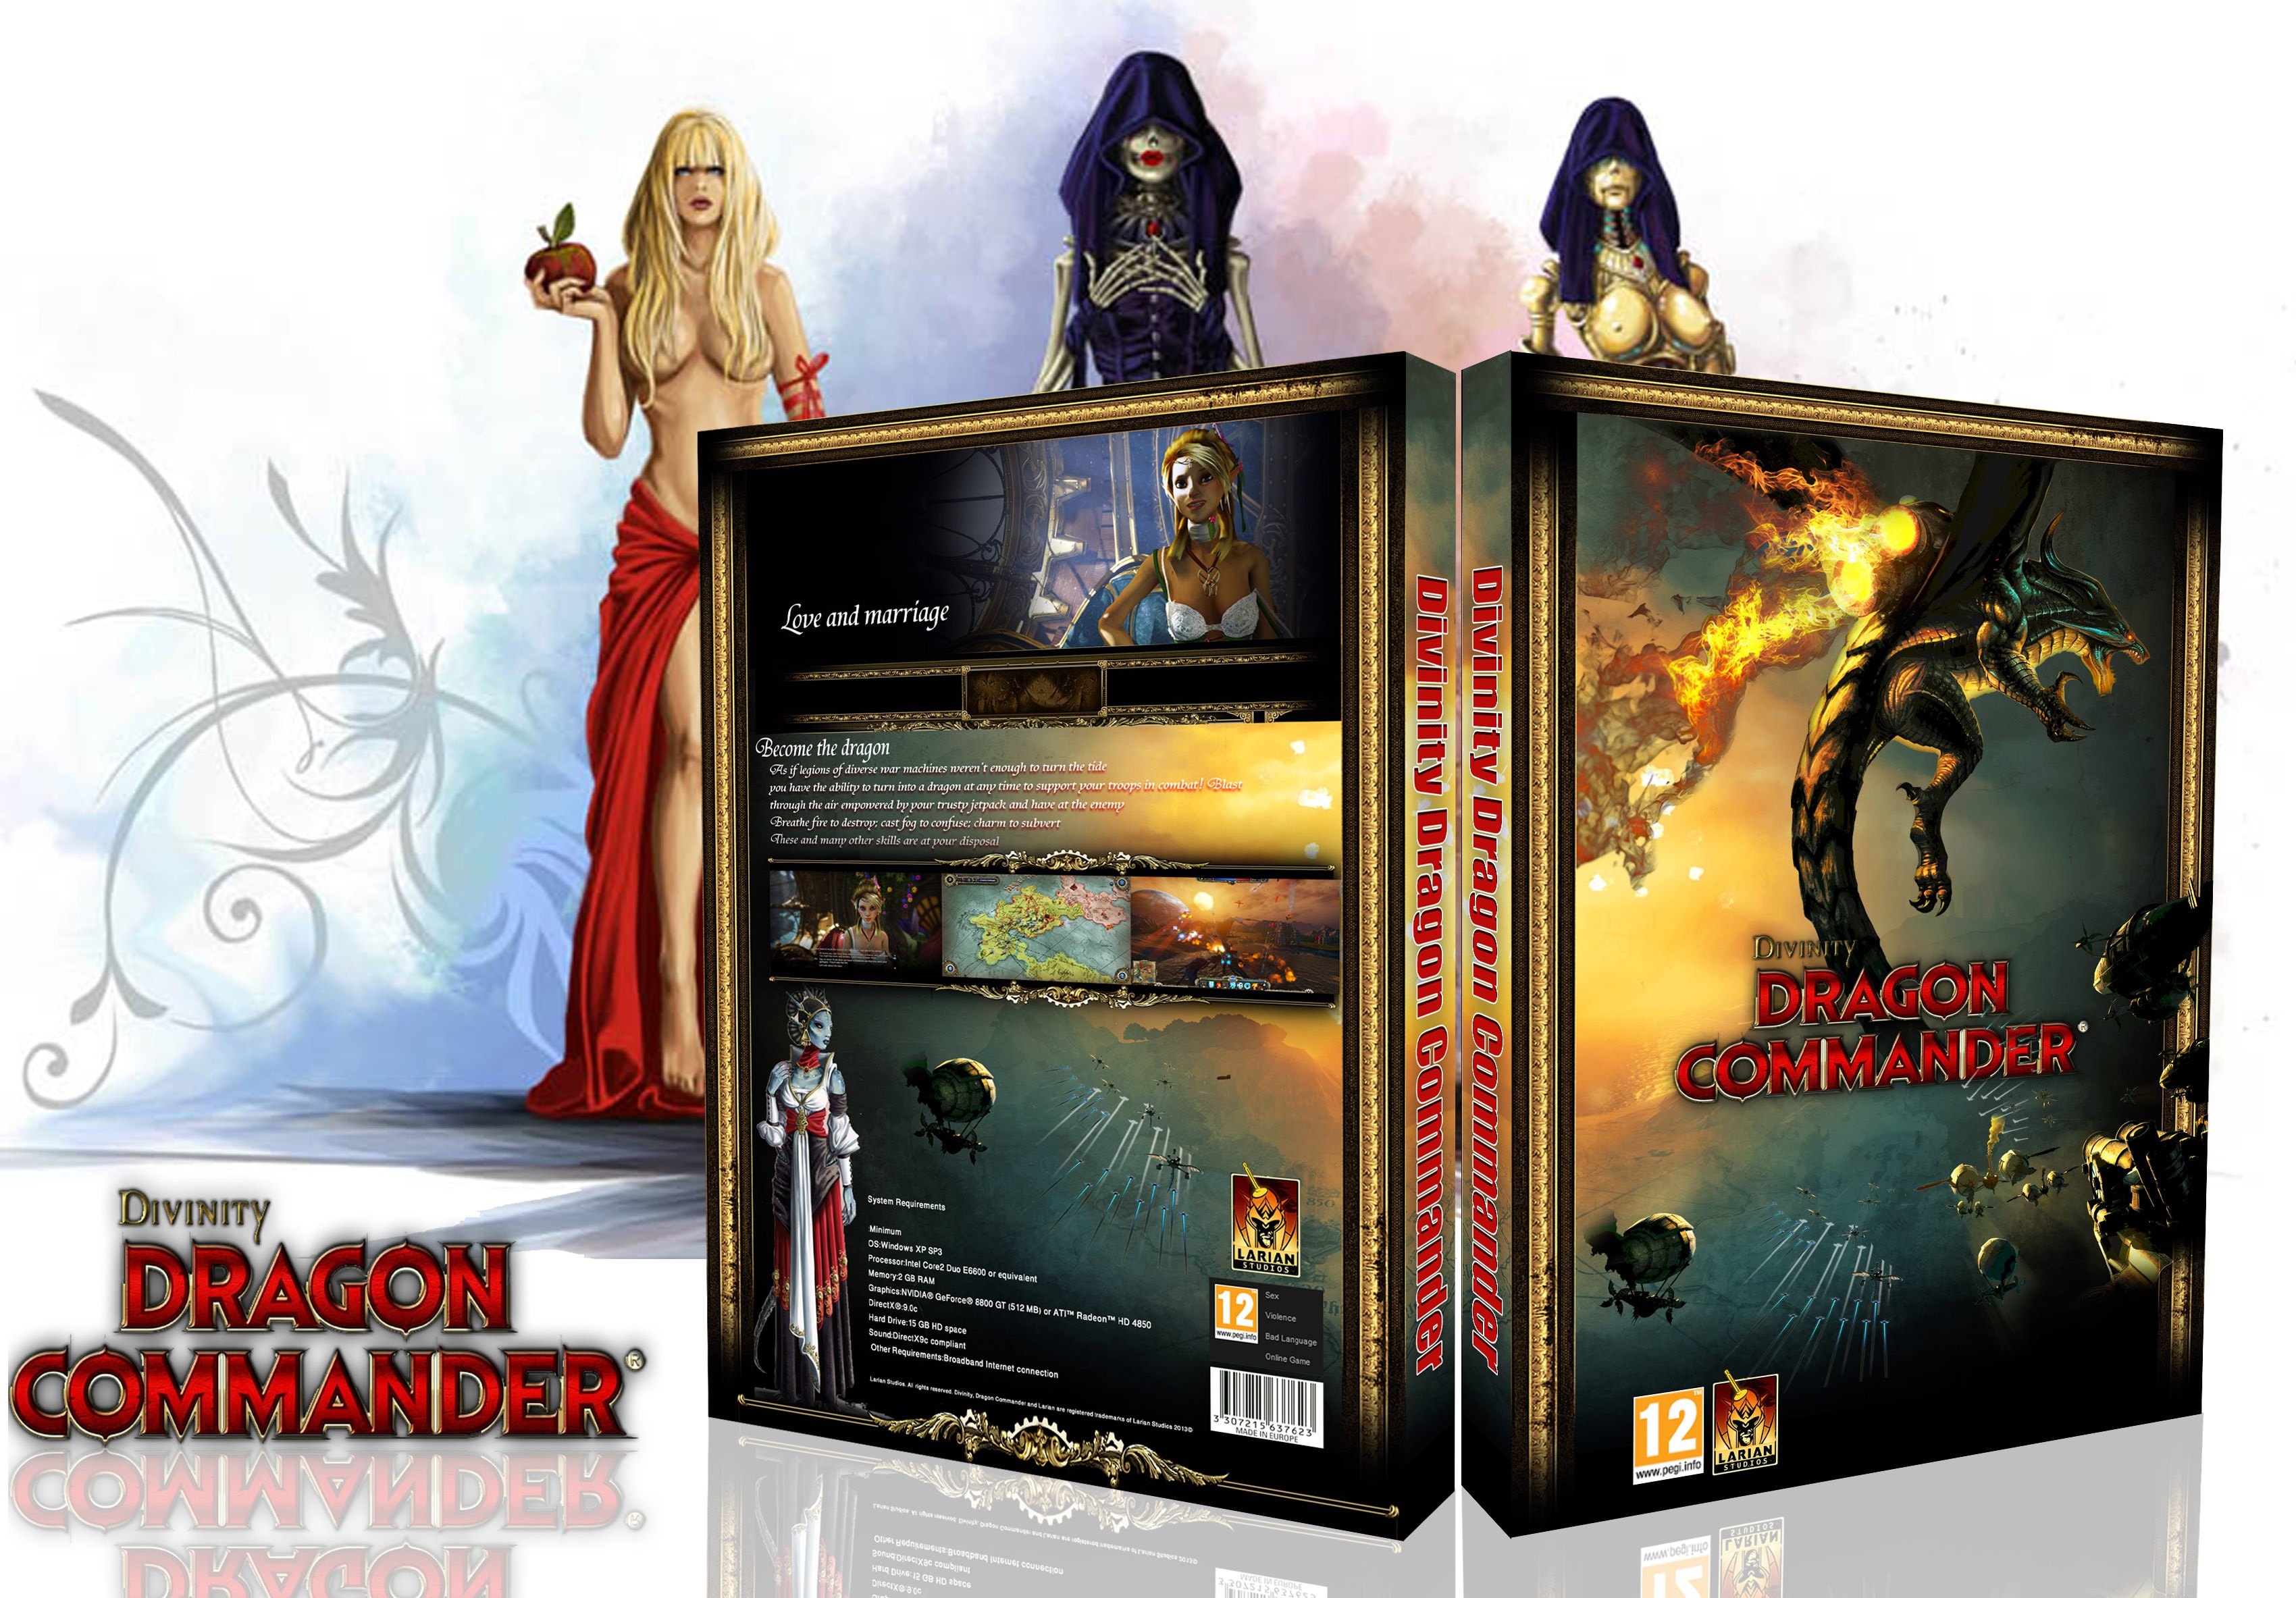 Divinity: Dragon Commander box cover